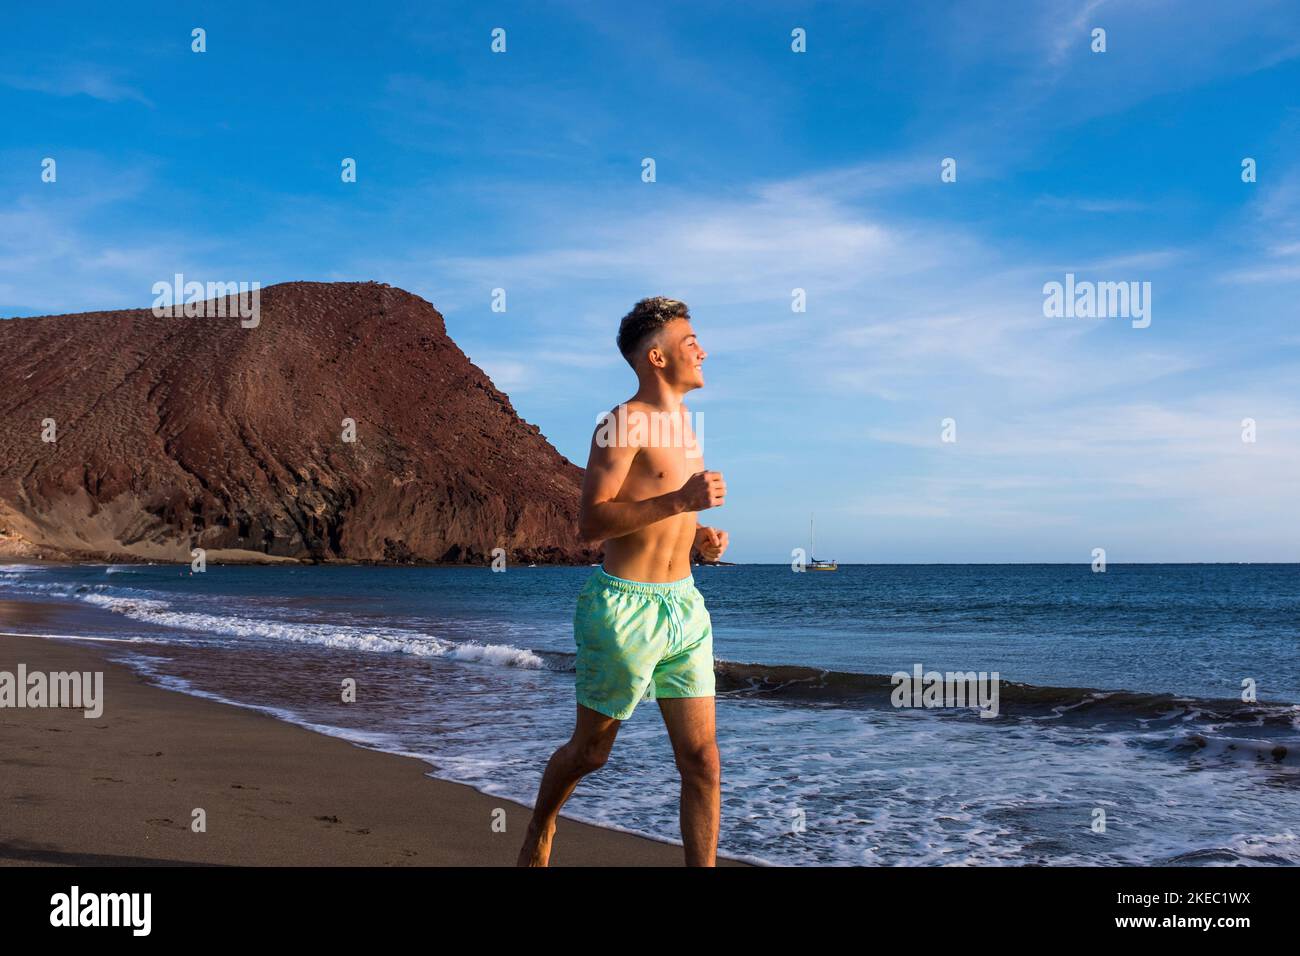 Ein Mann oder Teenager läuft auf dem Sand der Strand in der Nähe des Meeres oder des Ozeans - glücklicher und gesunder Lebensstil im Sommer in der Urlaubszeit Stockfoto